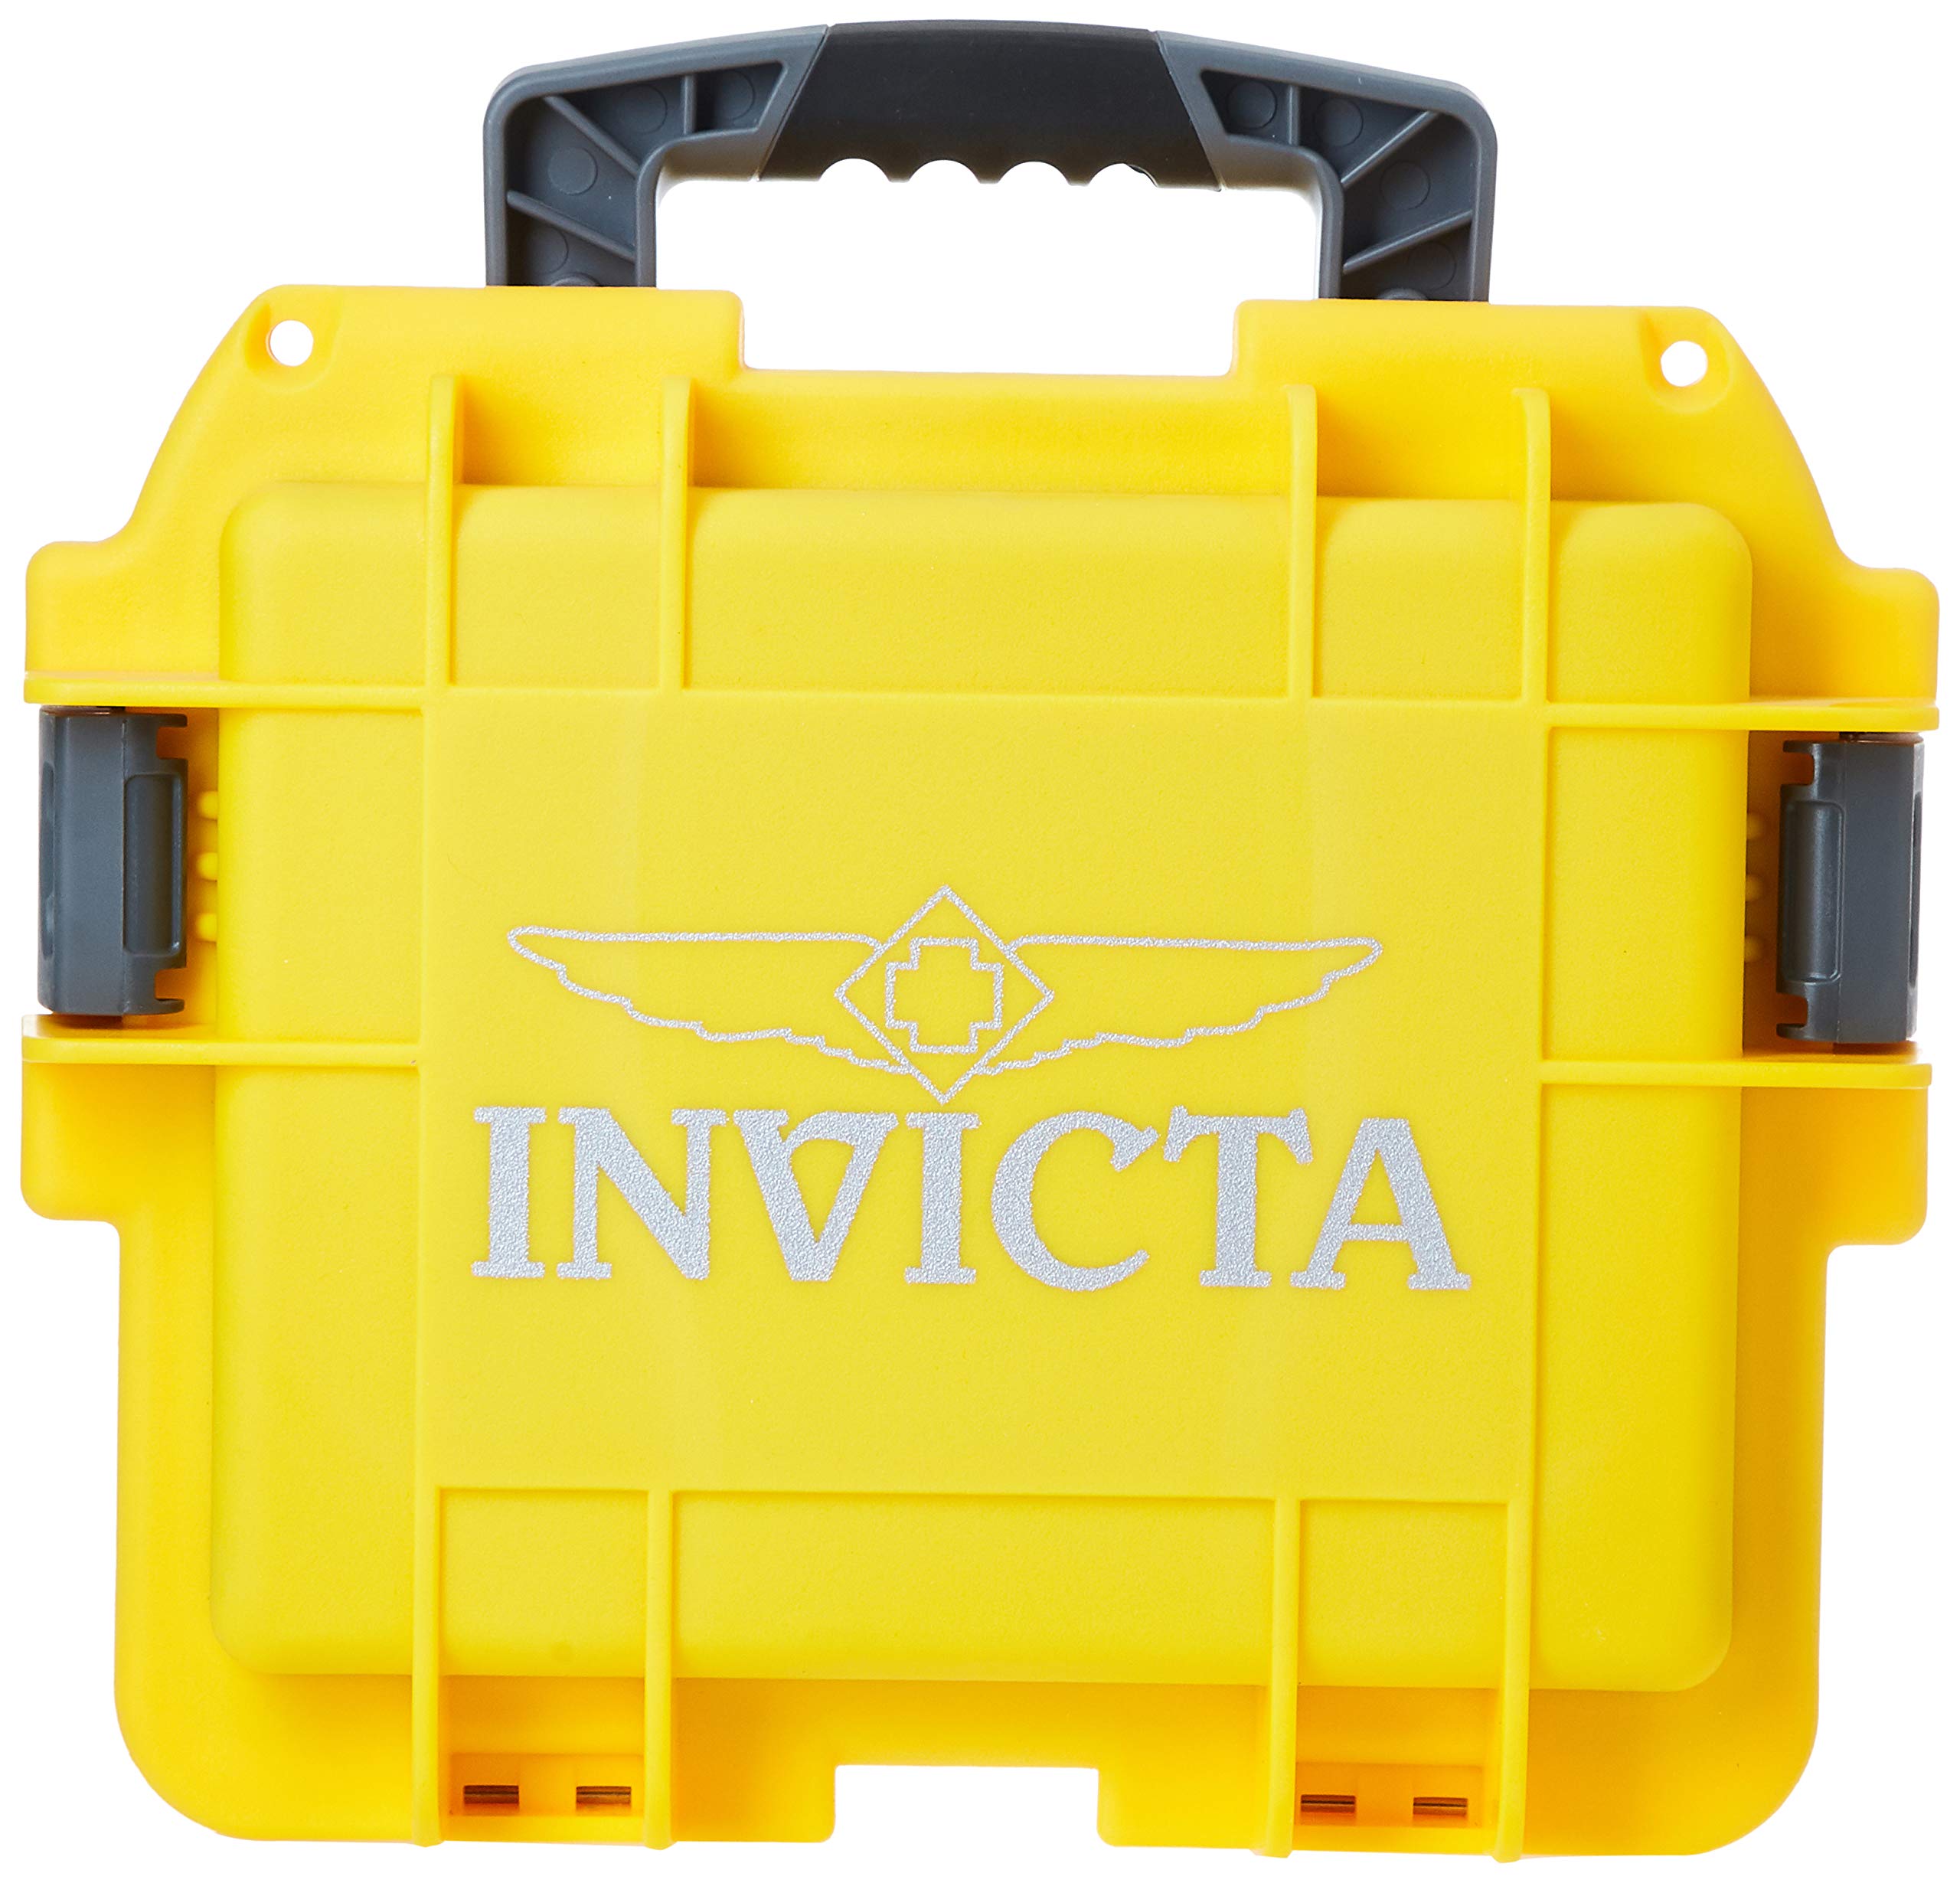 Invicta Watch Box DC3YEL, Yellow, Cuff